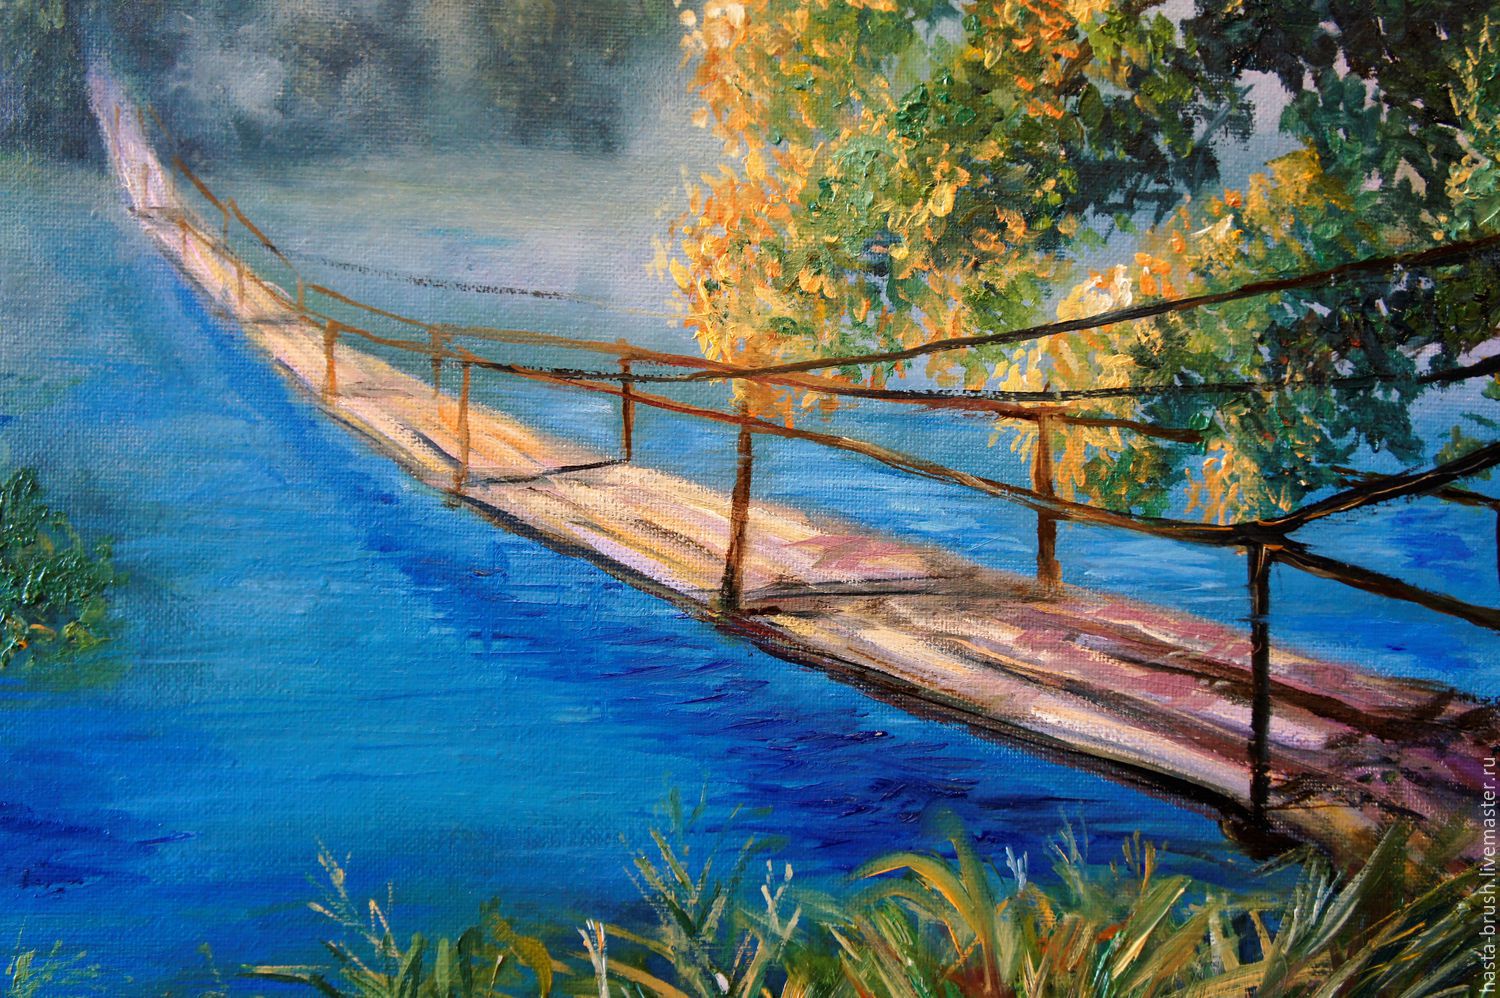 Картина мост. Картина маслом мост. Картина мост через реку. Картина мост через речку.